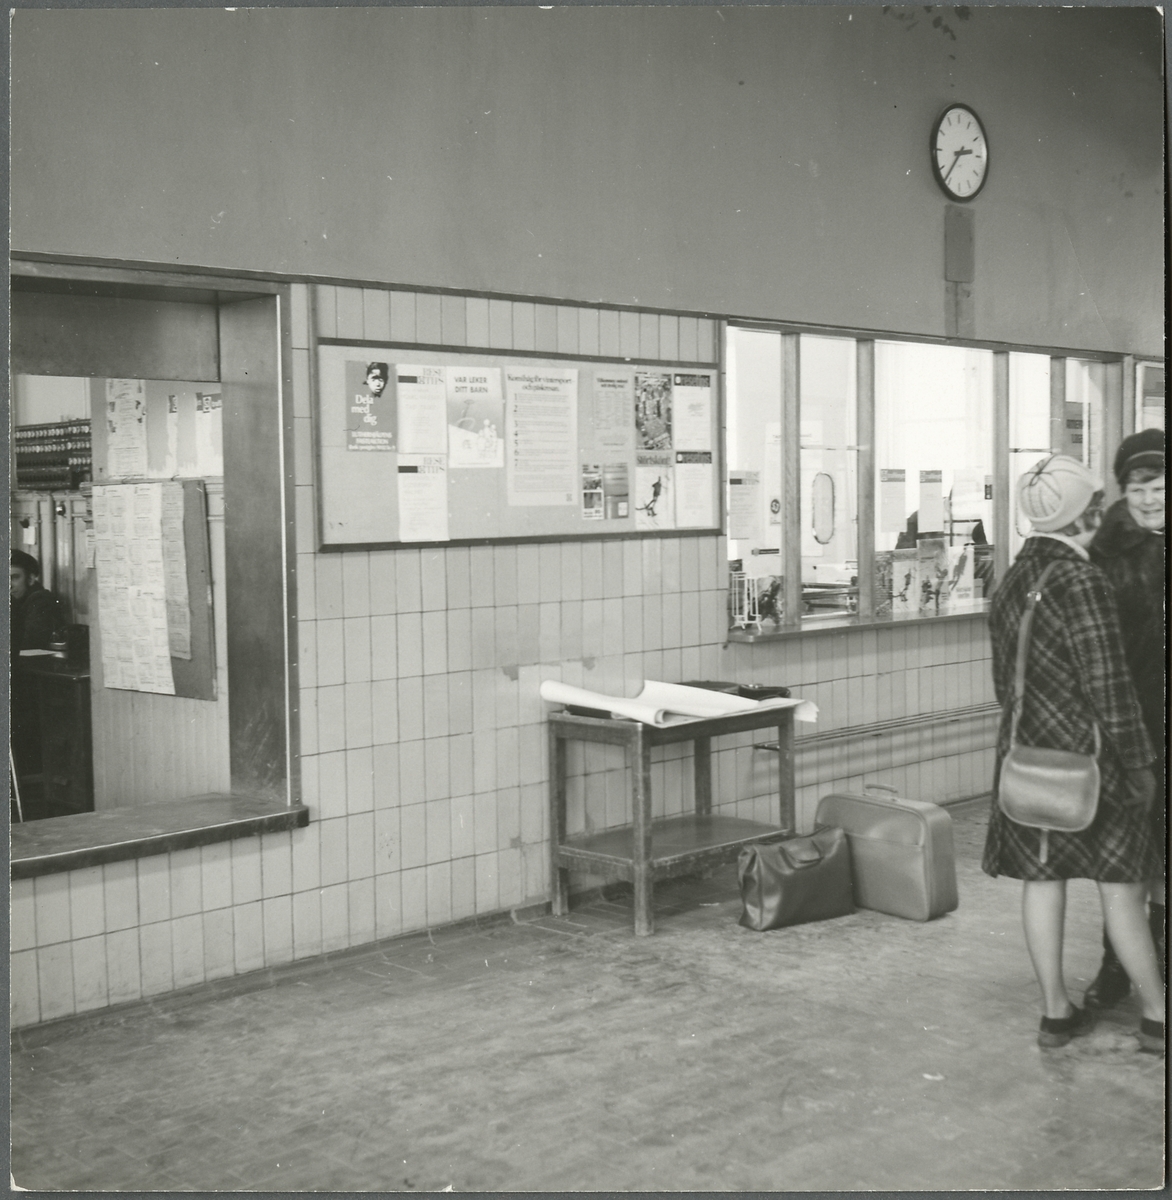 Resande i väntsalen på Nässjö station. I bakgrunden syns resgodsexpeditionen och biljettexpeditionen.